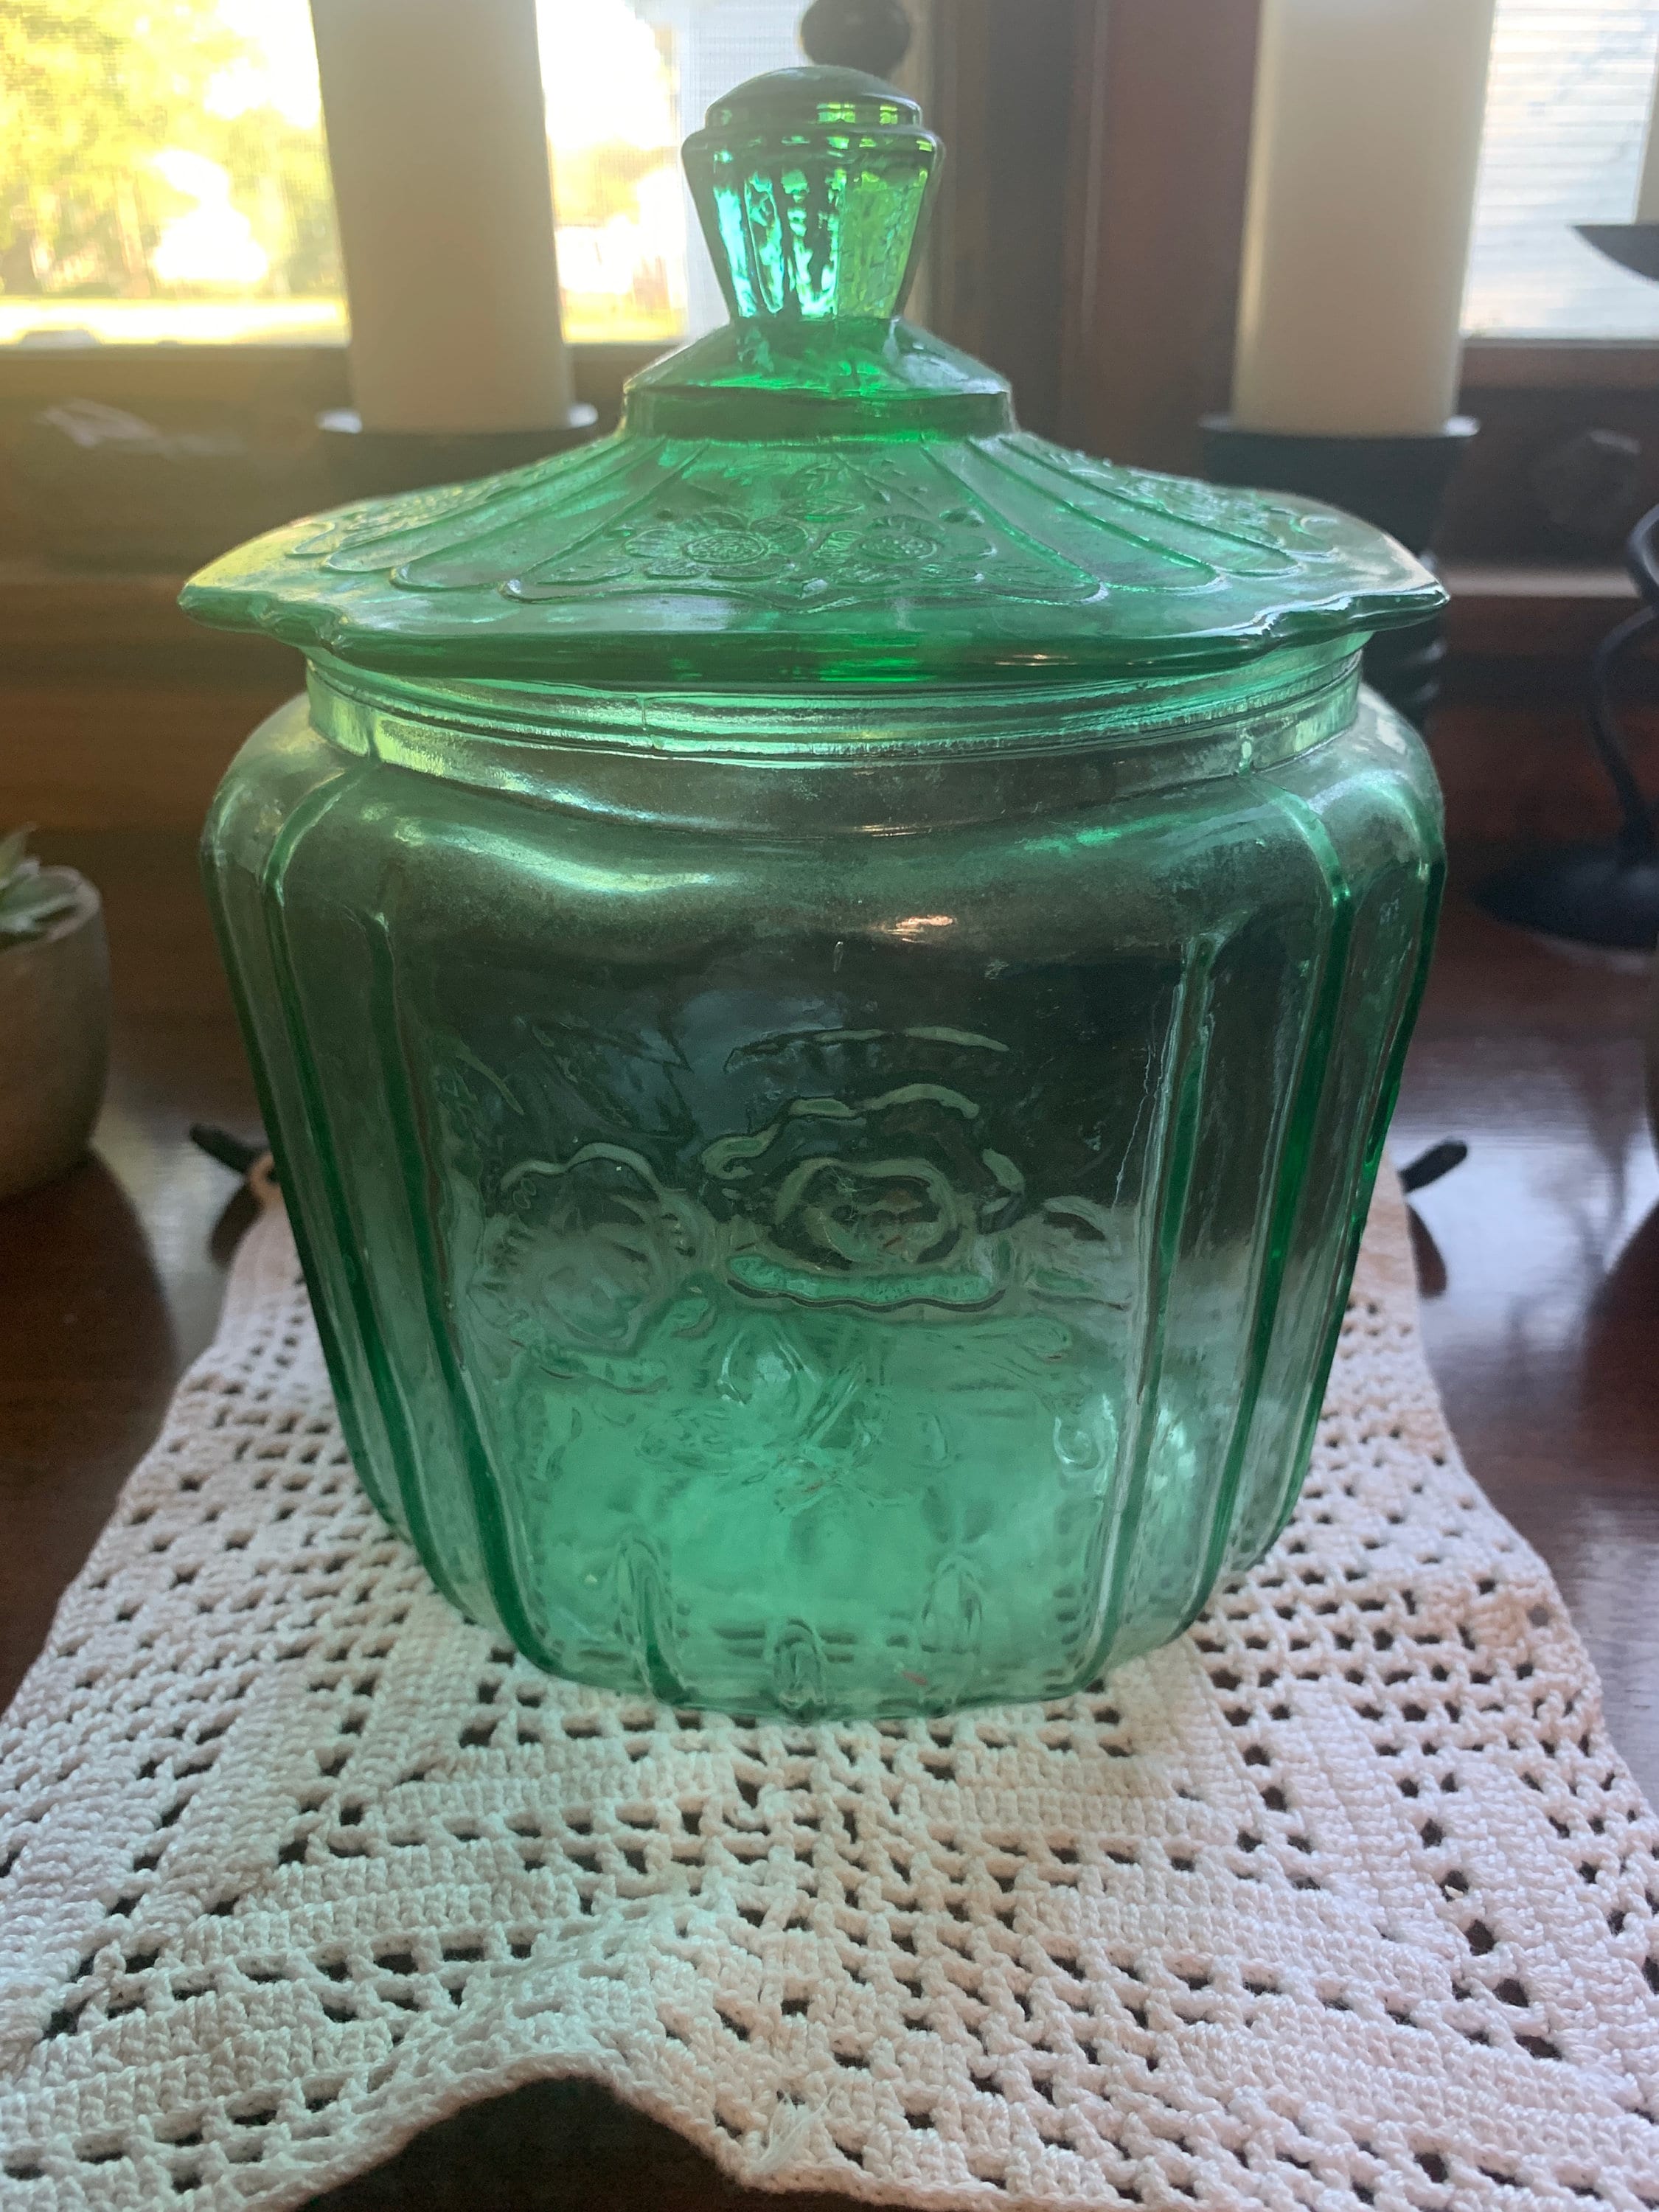 Outshine Vintage Cookie Jar & Cookie Cutters, Mint, Green